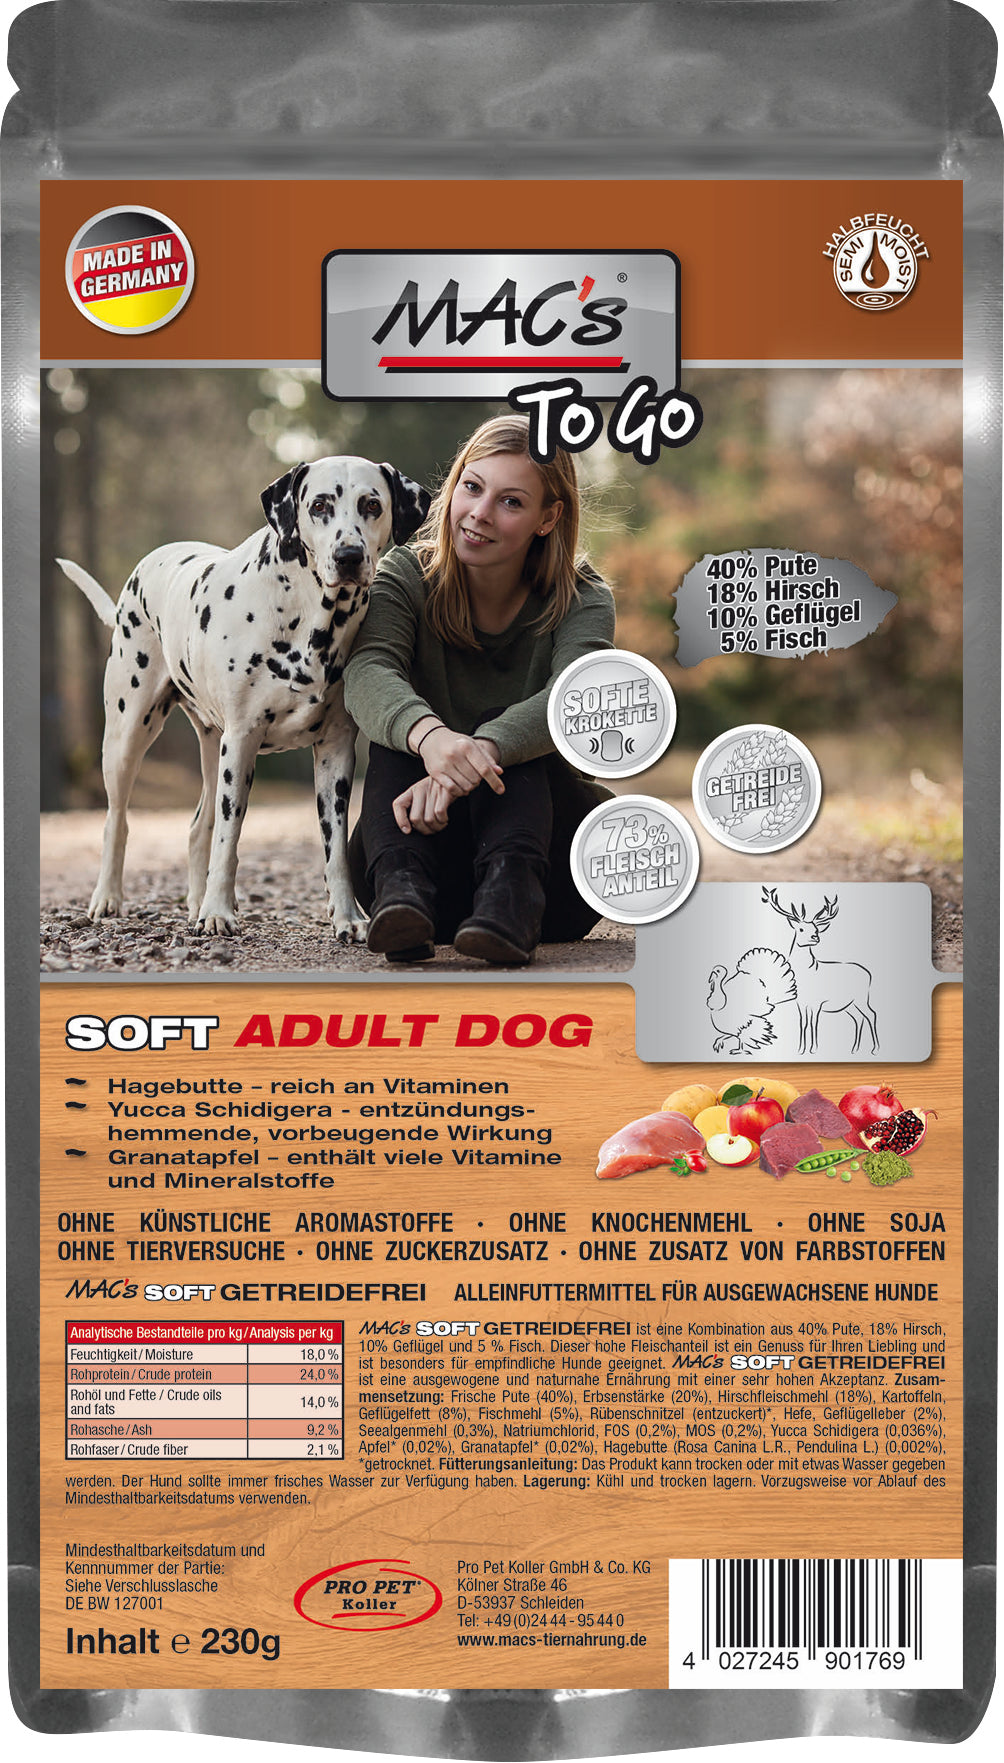 Artikel mit dem Namen MAC's Dog Soft "to go" Pute & Hirsch im Shop von zoo.de , dem Onlineshop für nachhaltiges Hundefutter und Katzenfutter.